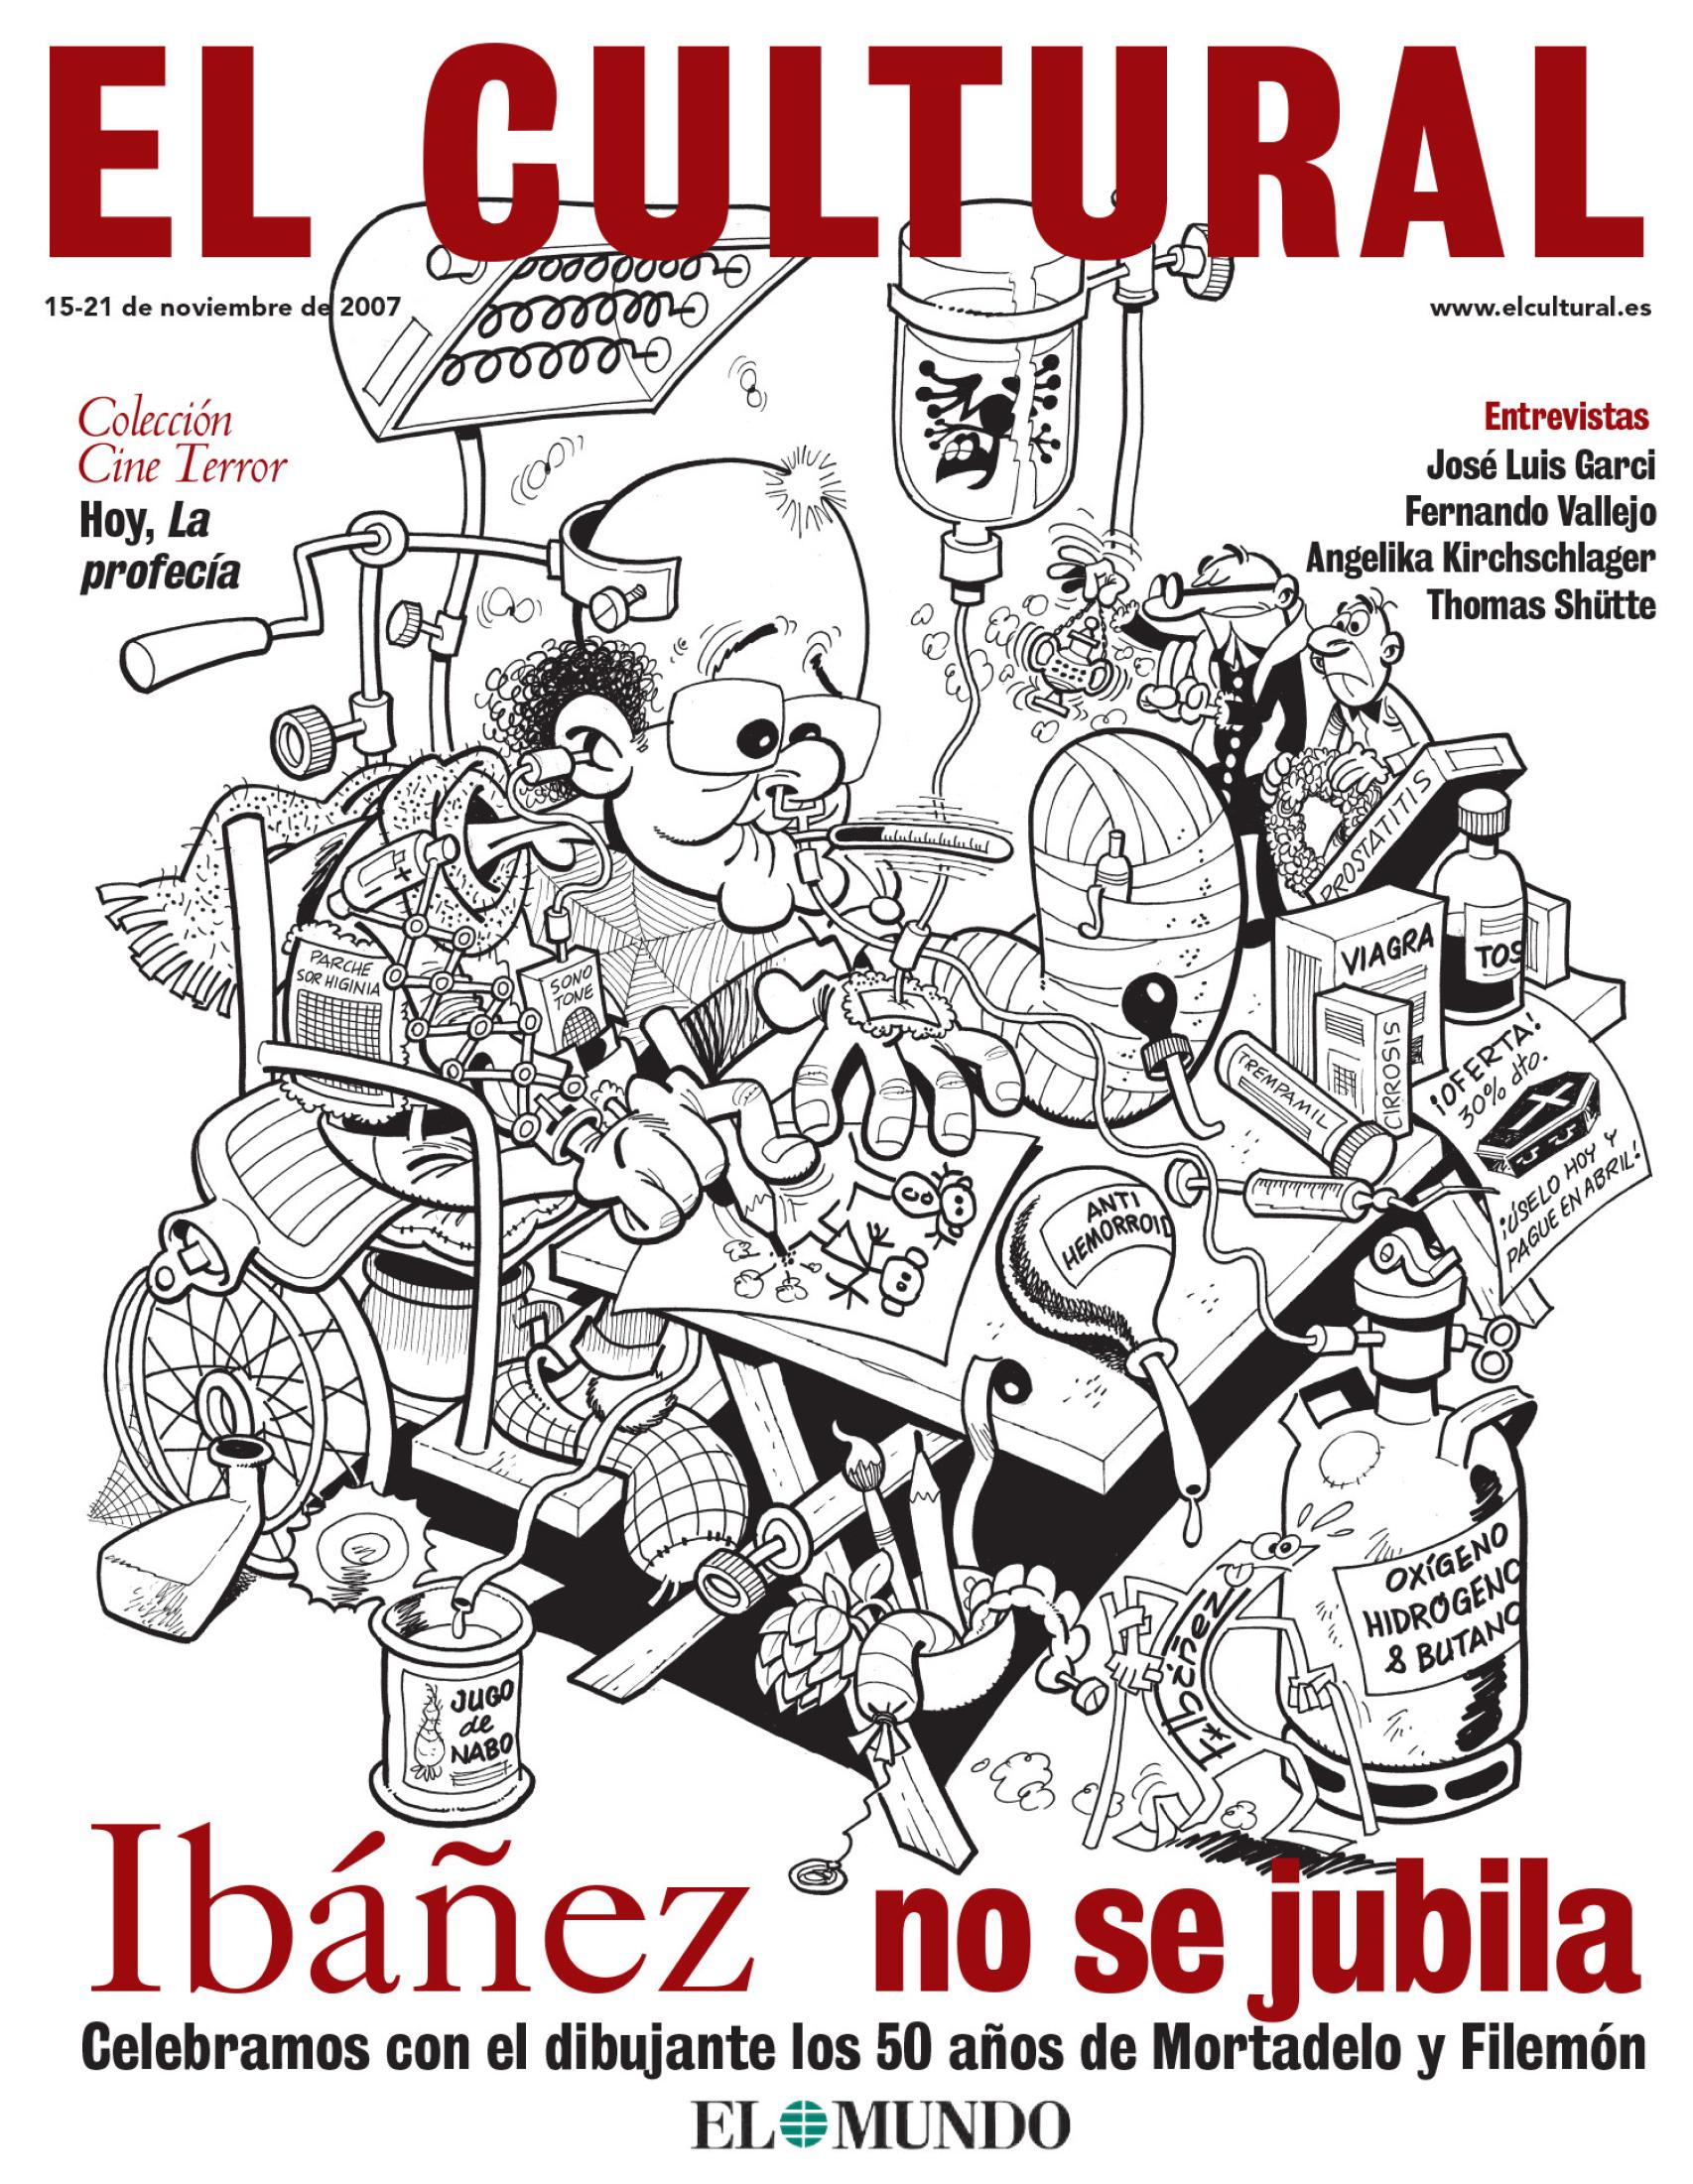 Portada del 15 de noviembre de 2007 de El Cultural, dibujada por Francisco Ibáñez